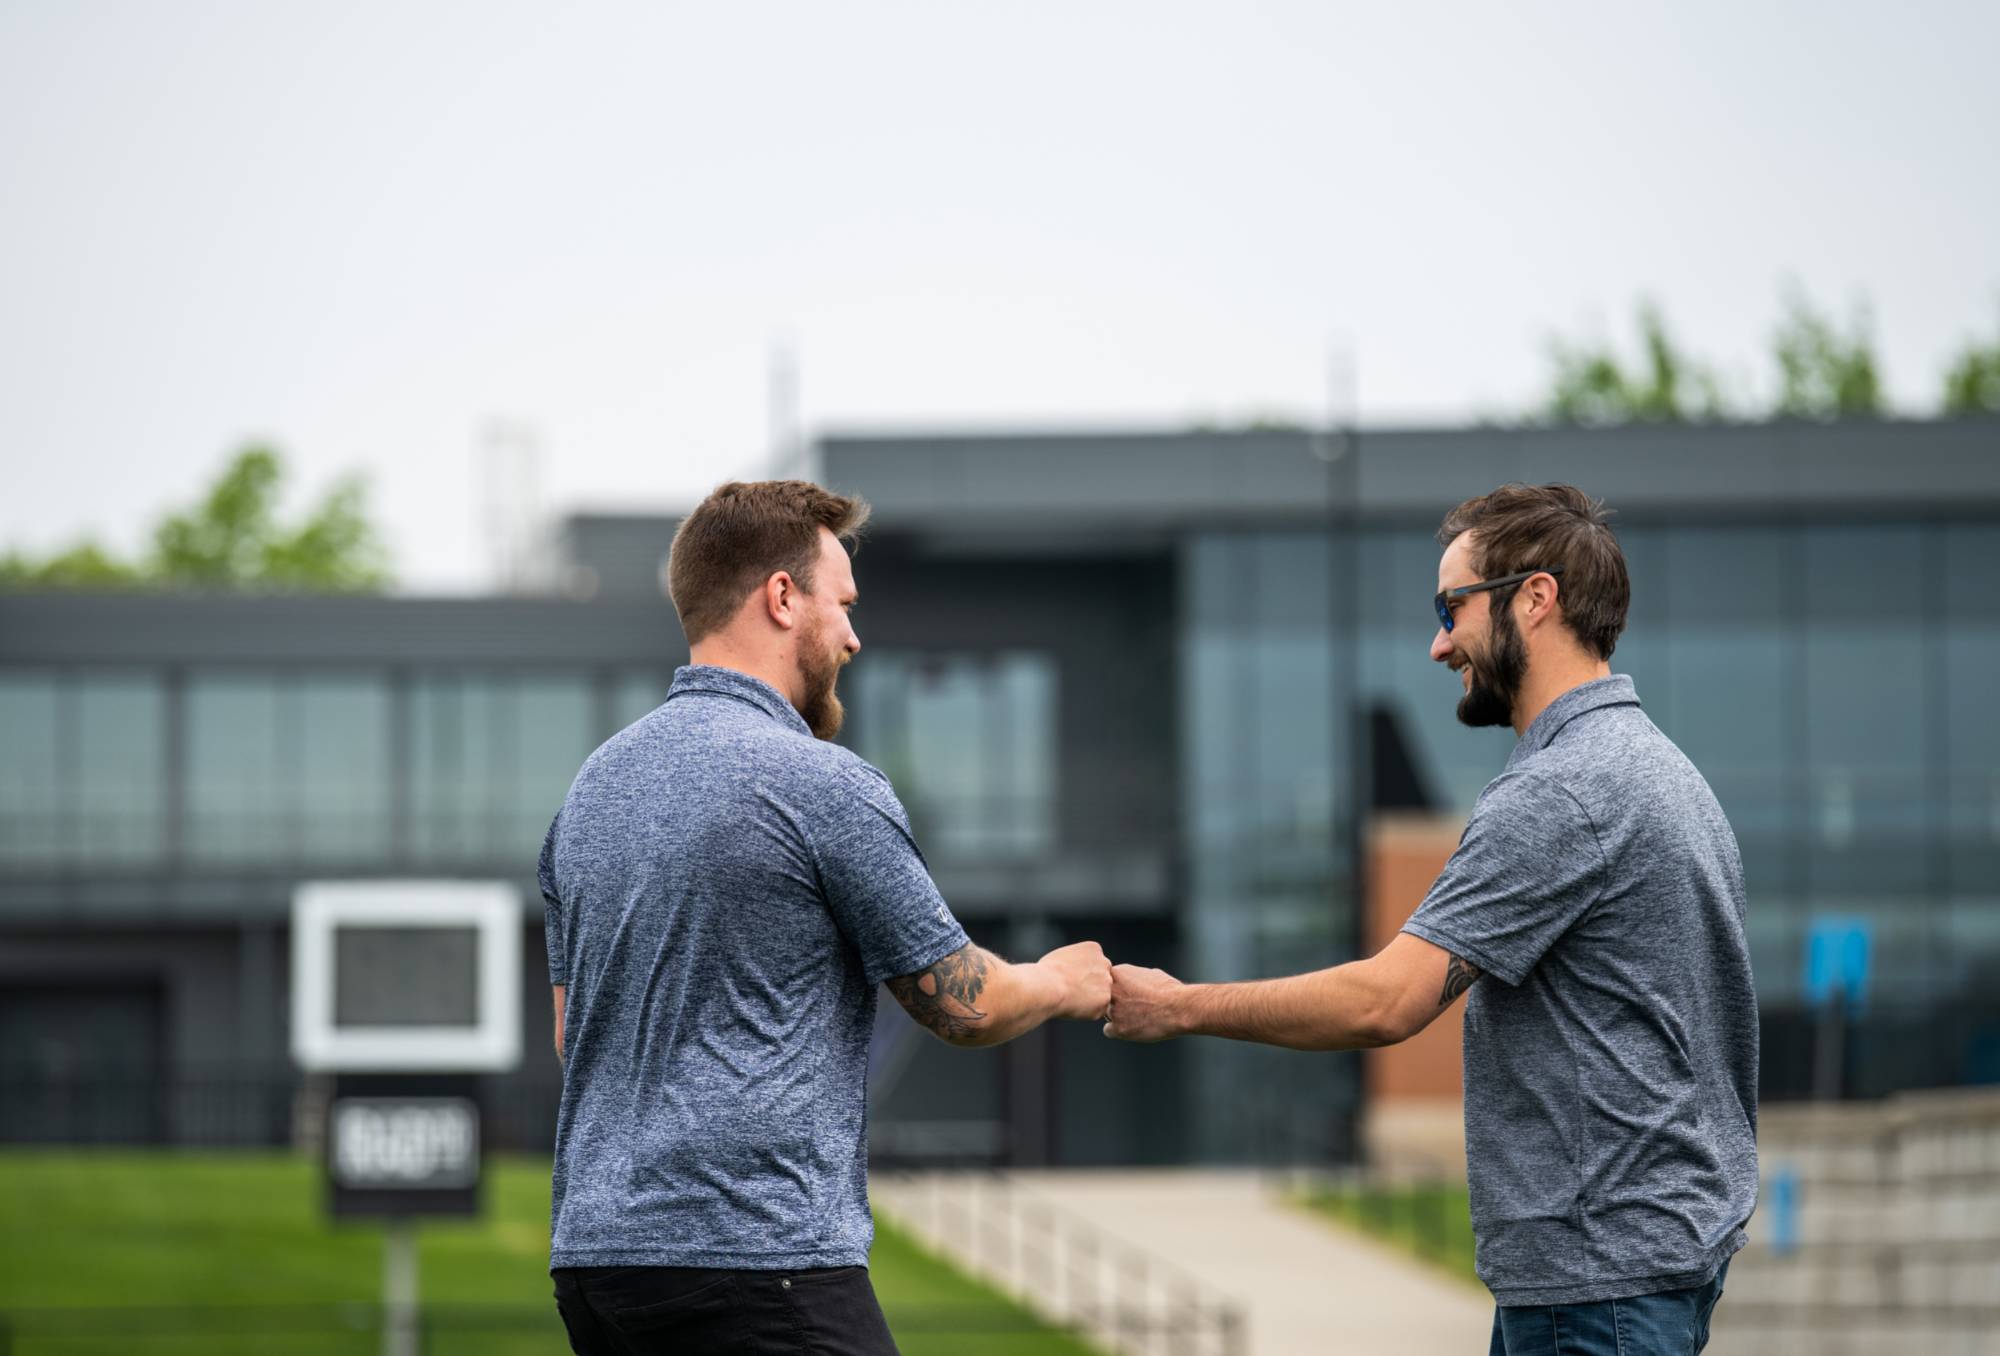 Jake Mallekoote and Matt DeRuiter fist bumping at the 2022 Cornhole Tournament